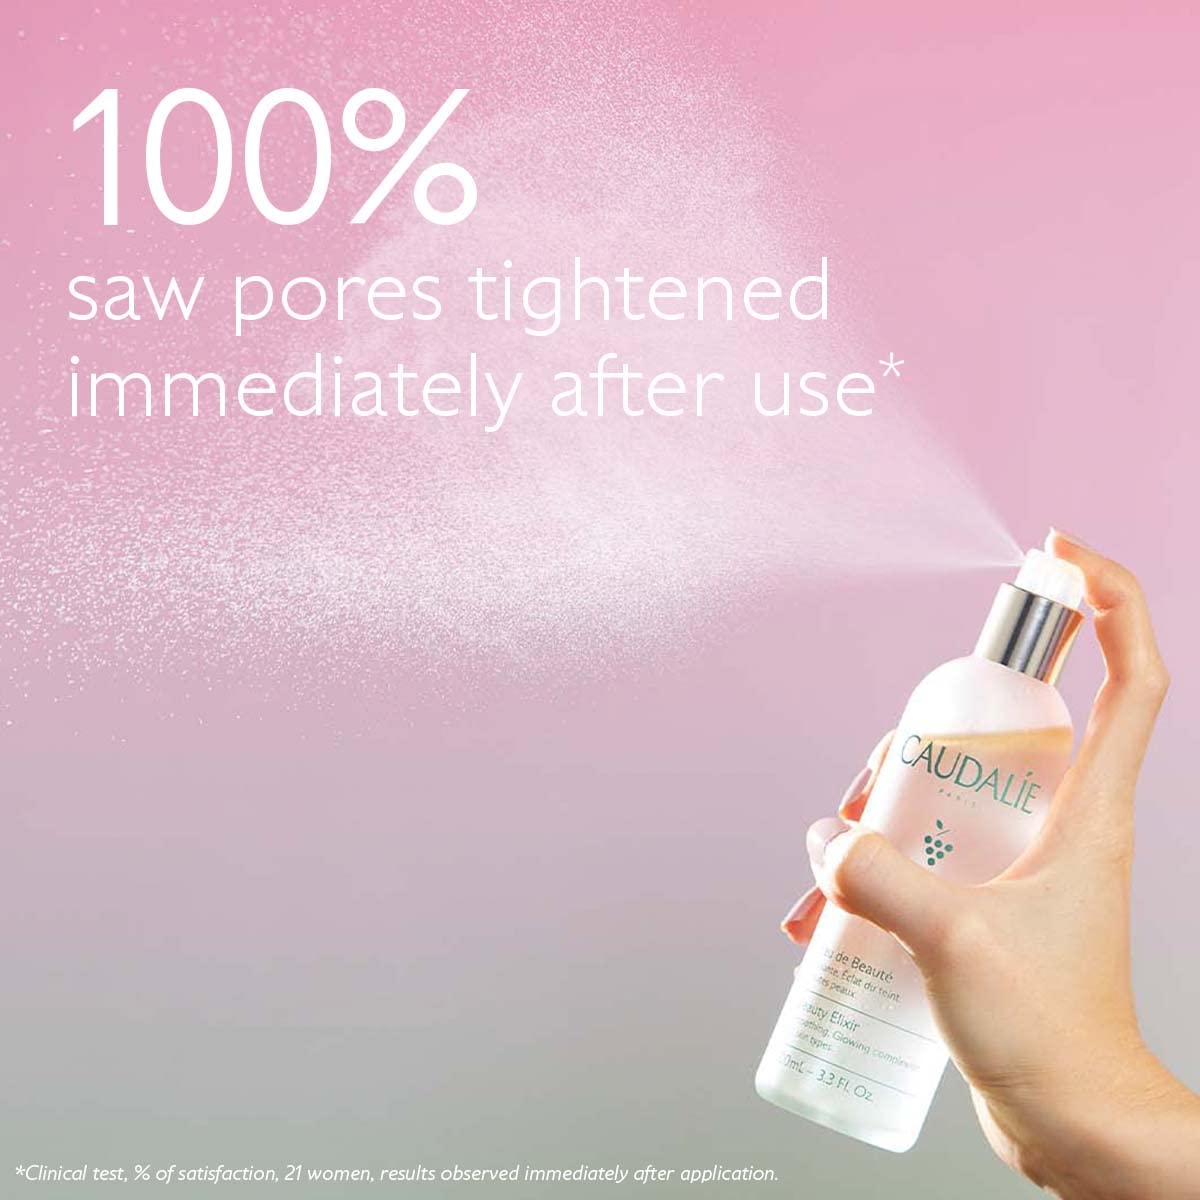 Caudalie Beauty Elixir Face Mist: Toner That Tightens Pores + Reduces Dullness + Sets Makeup